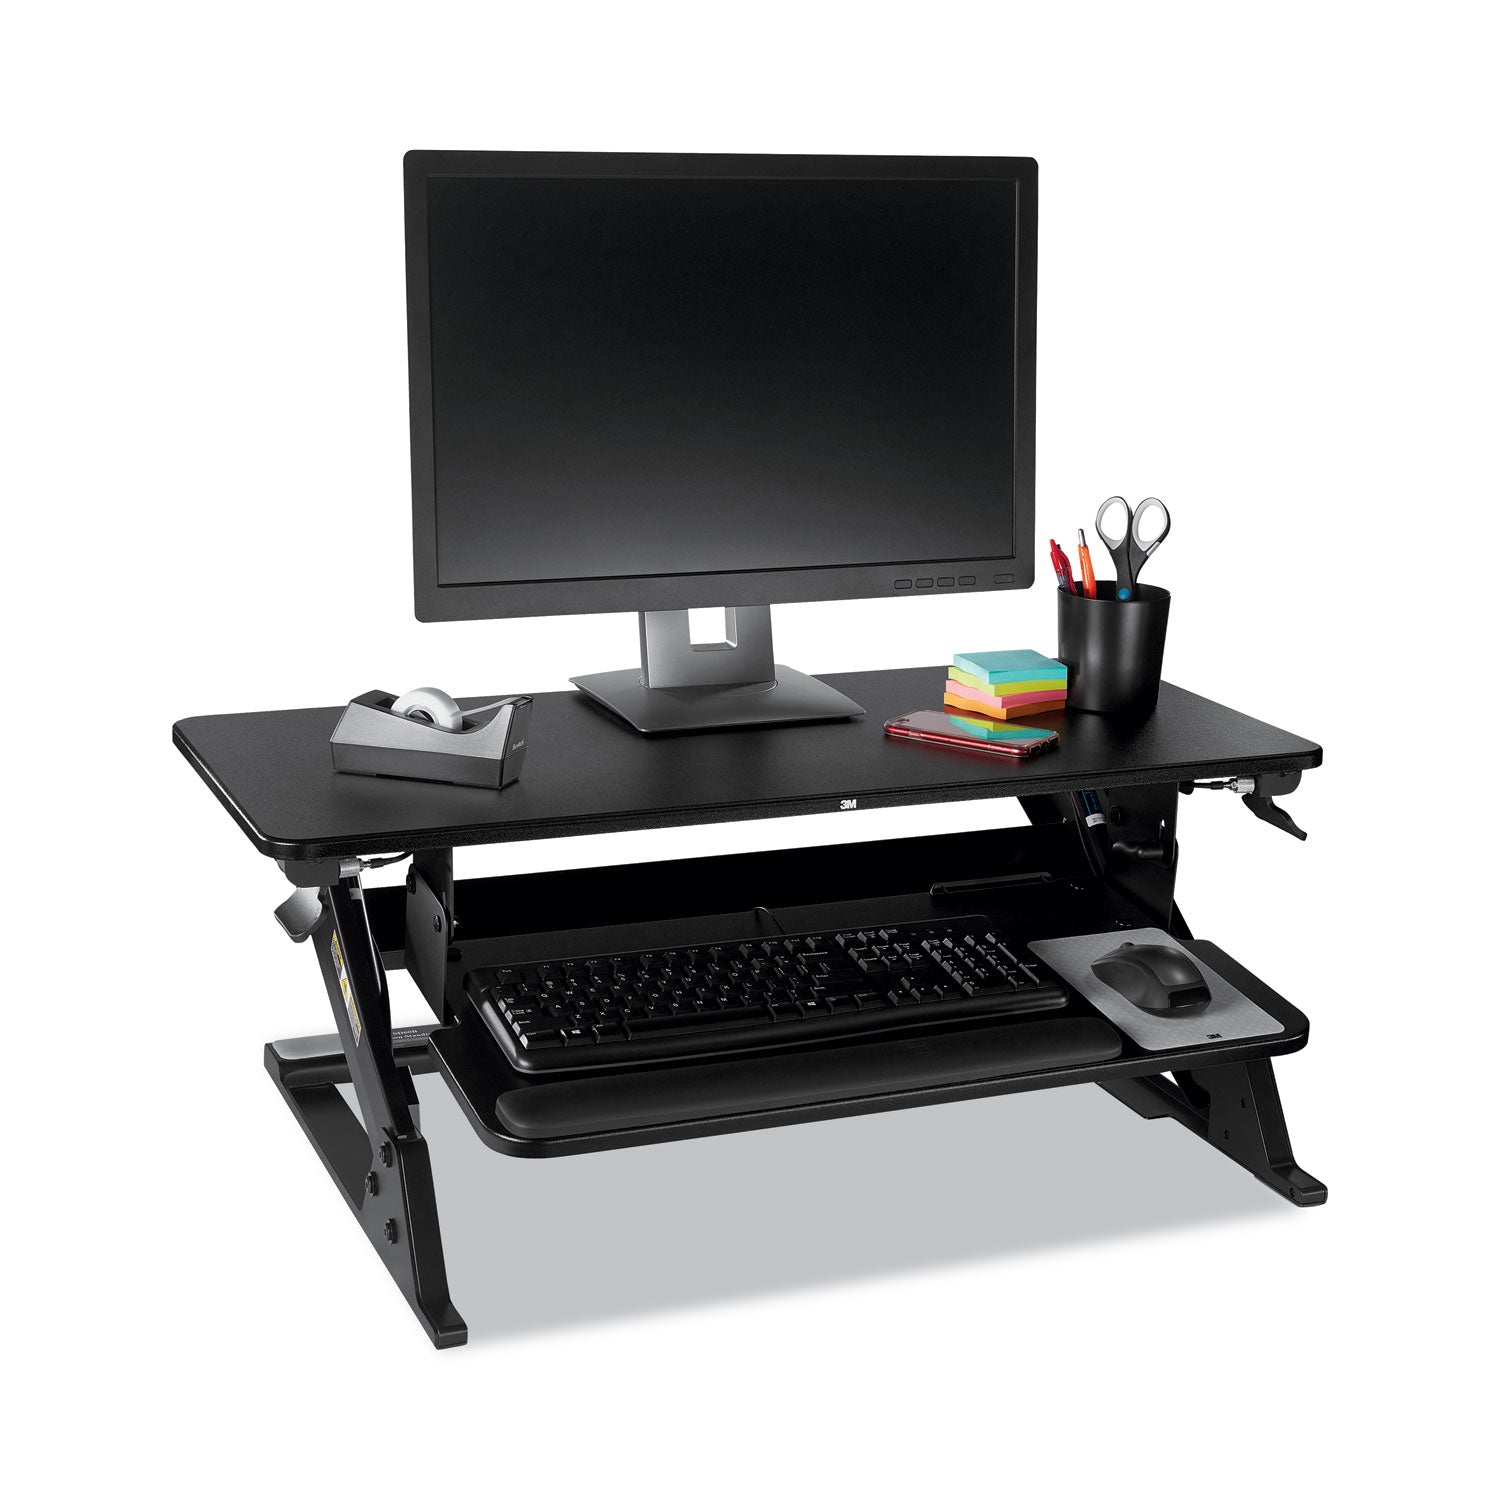 3M™ Precision Standing Desk, 35.4